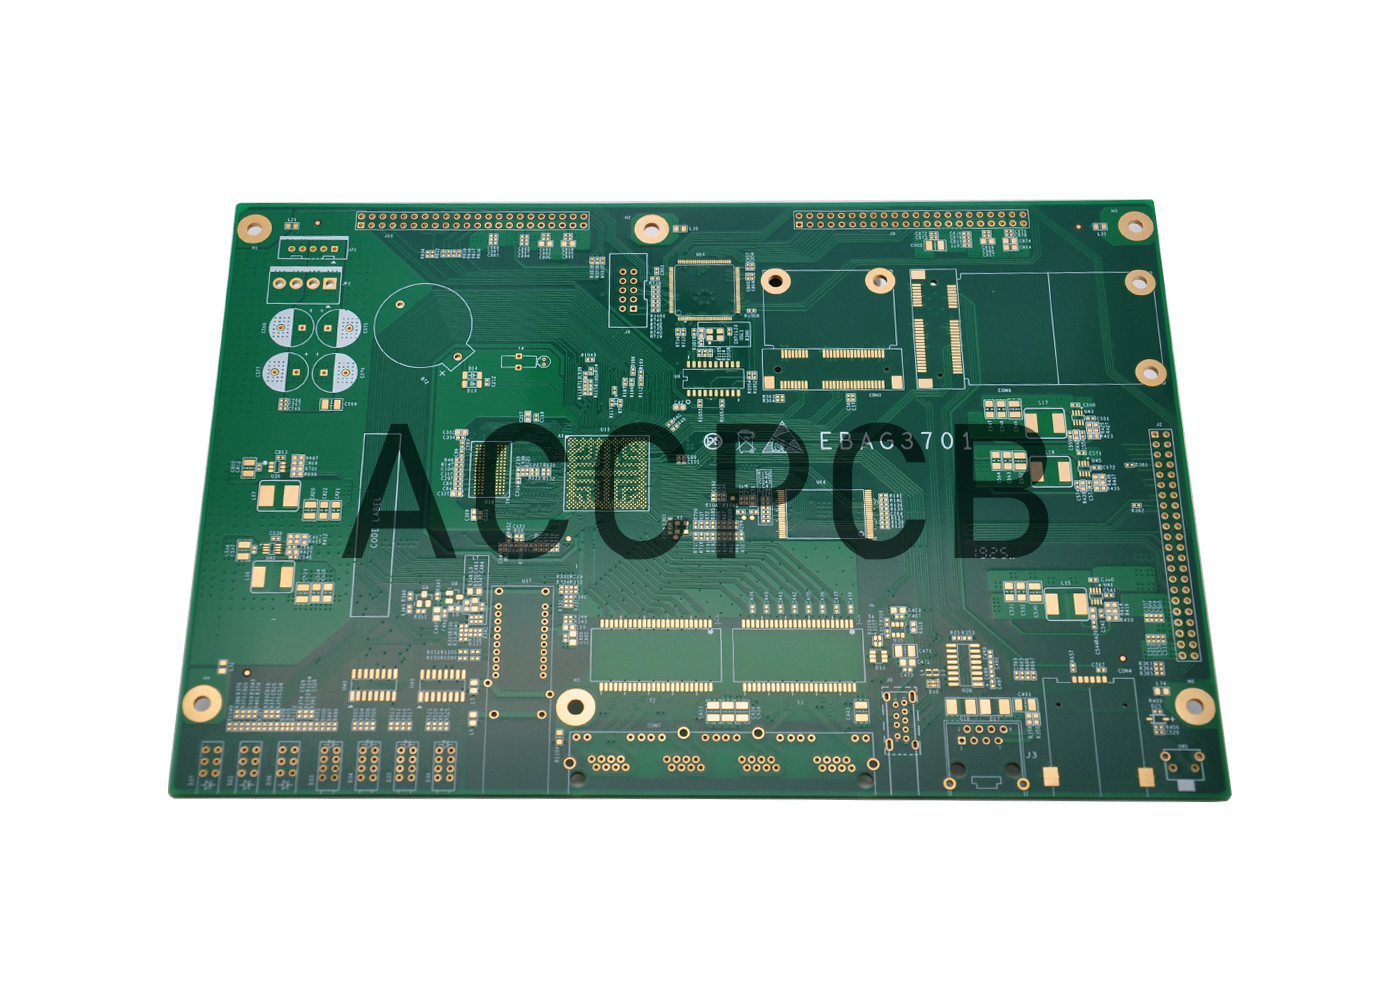 OEM KB FR4 1.0MM grubości Elektroniczna płytka PCB HDI Wyrównanie lutowania gorącym powietrzeml Micro Section